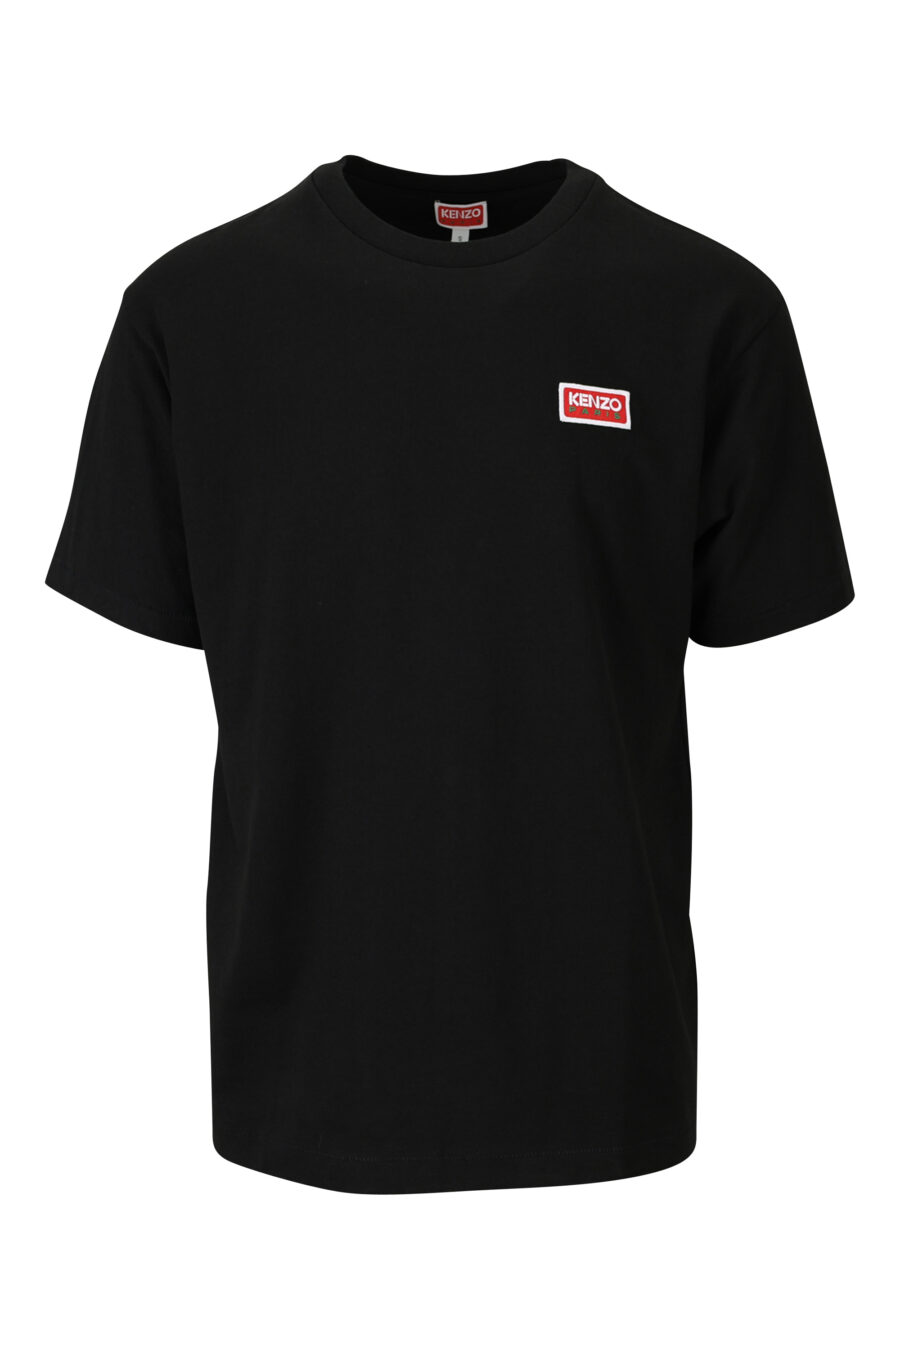 T-shirt preta com o logótipo pequeno "kenzo paris" - 3612230542990